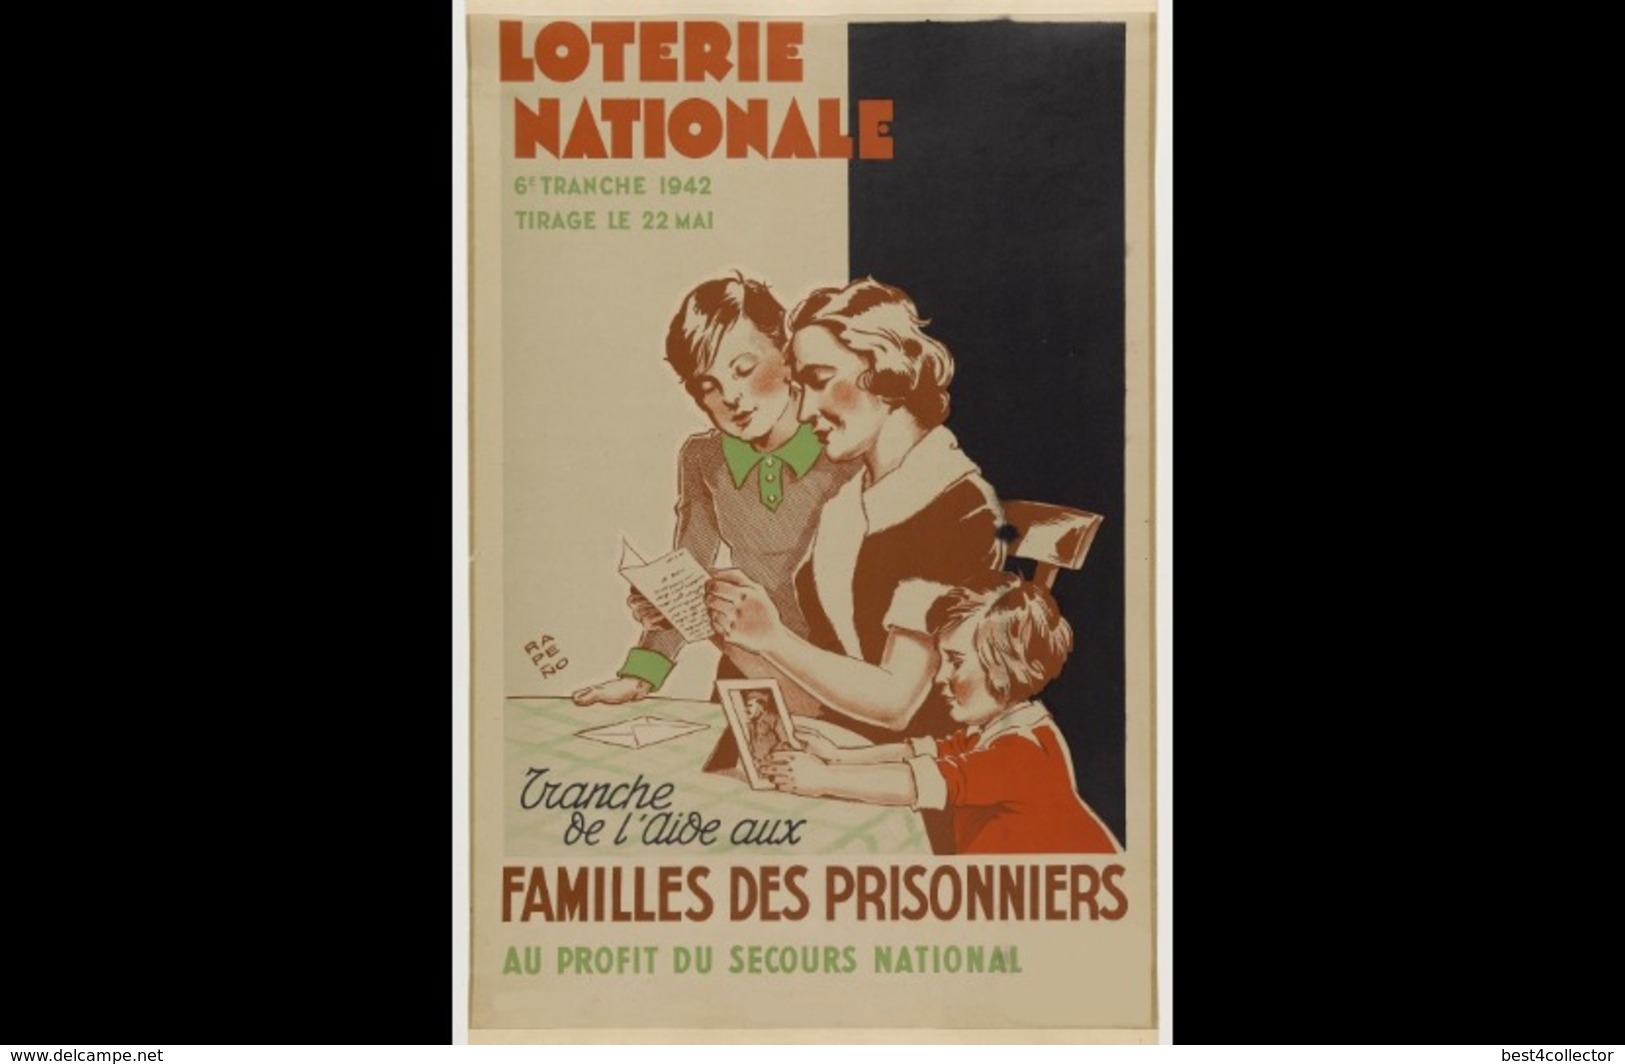 @@@ MAGNET - Loterie Nationale... Tranche De L'aide Aux Familles Des Prisonniers Au Profit Du Secours National - Publicitaires